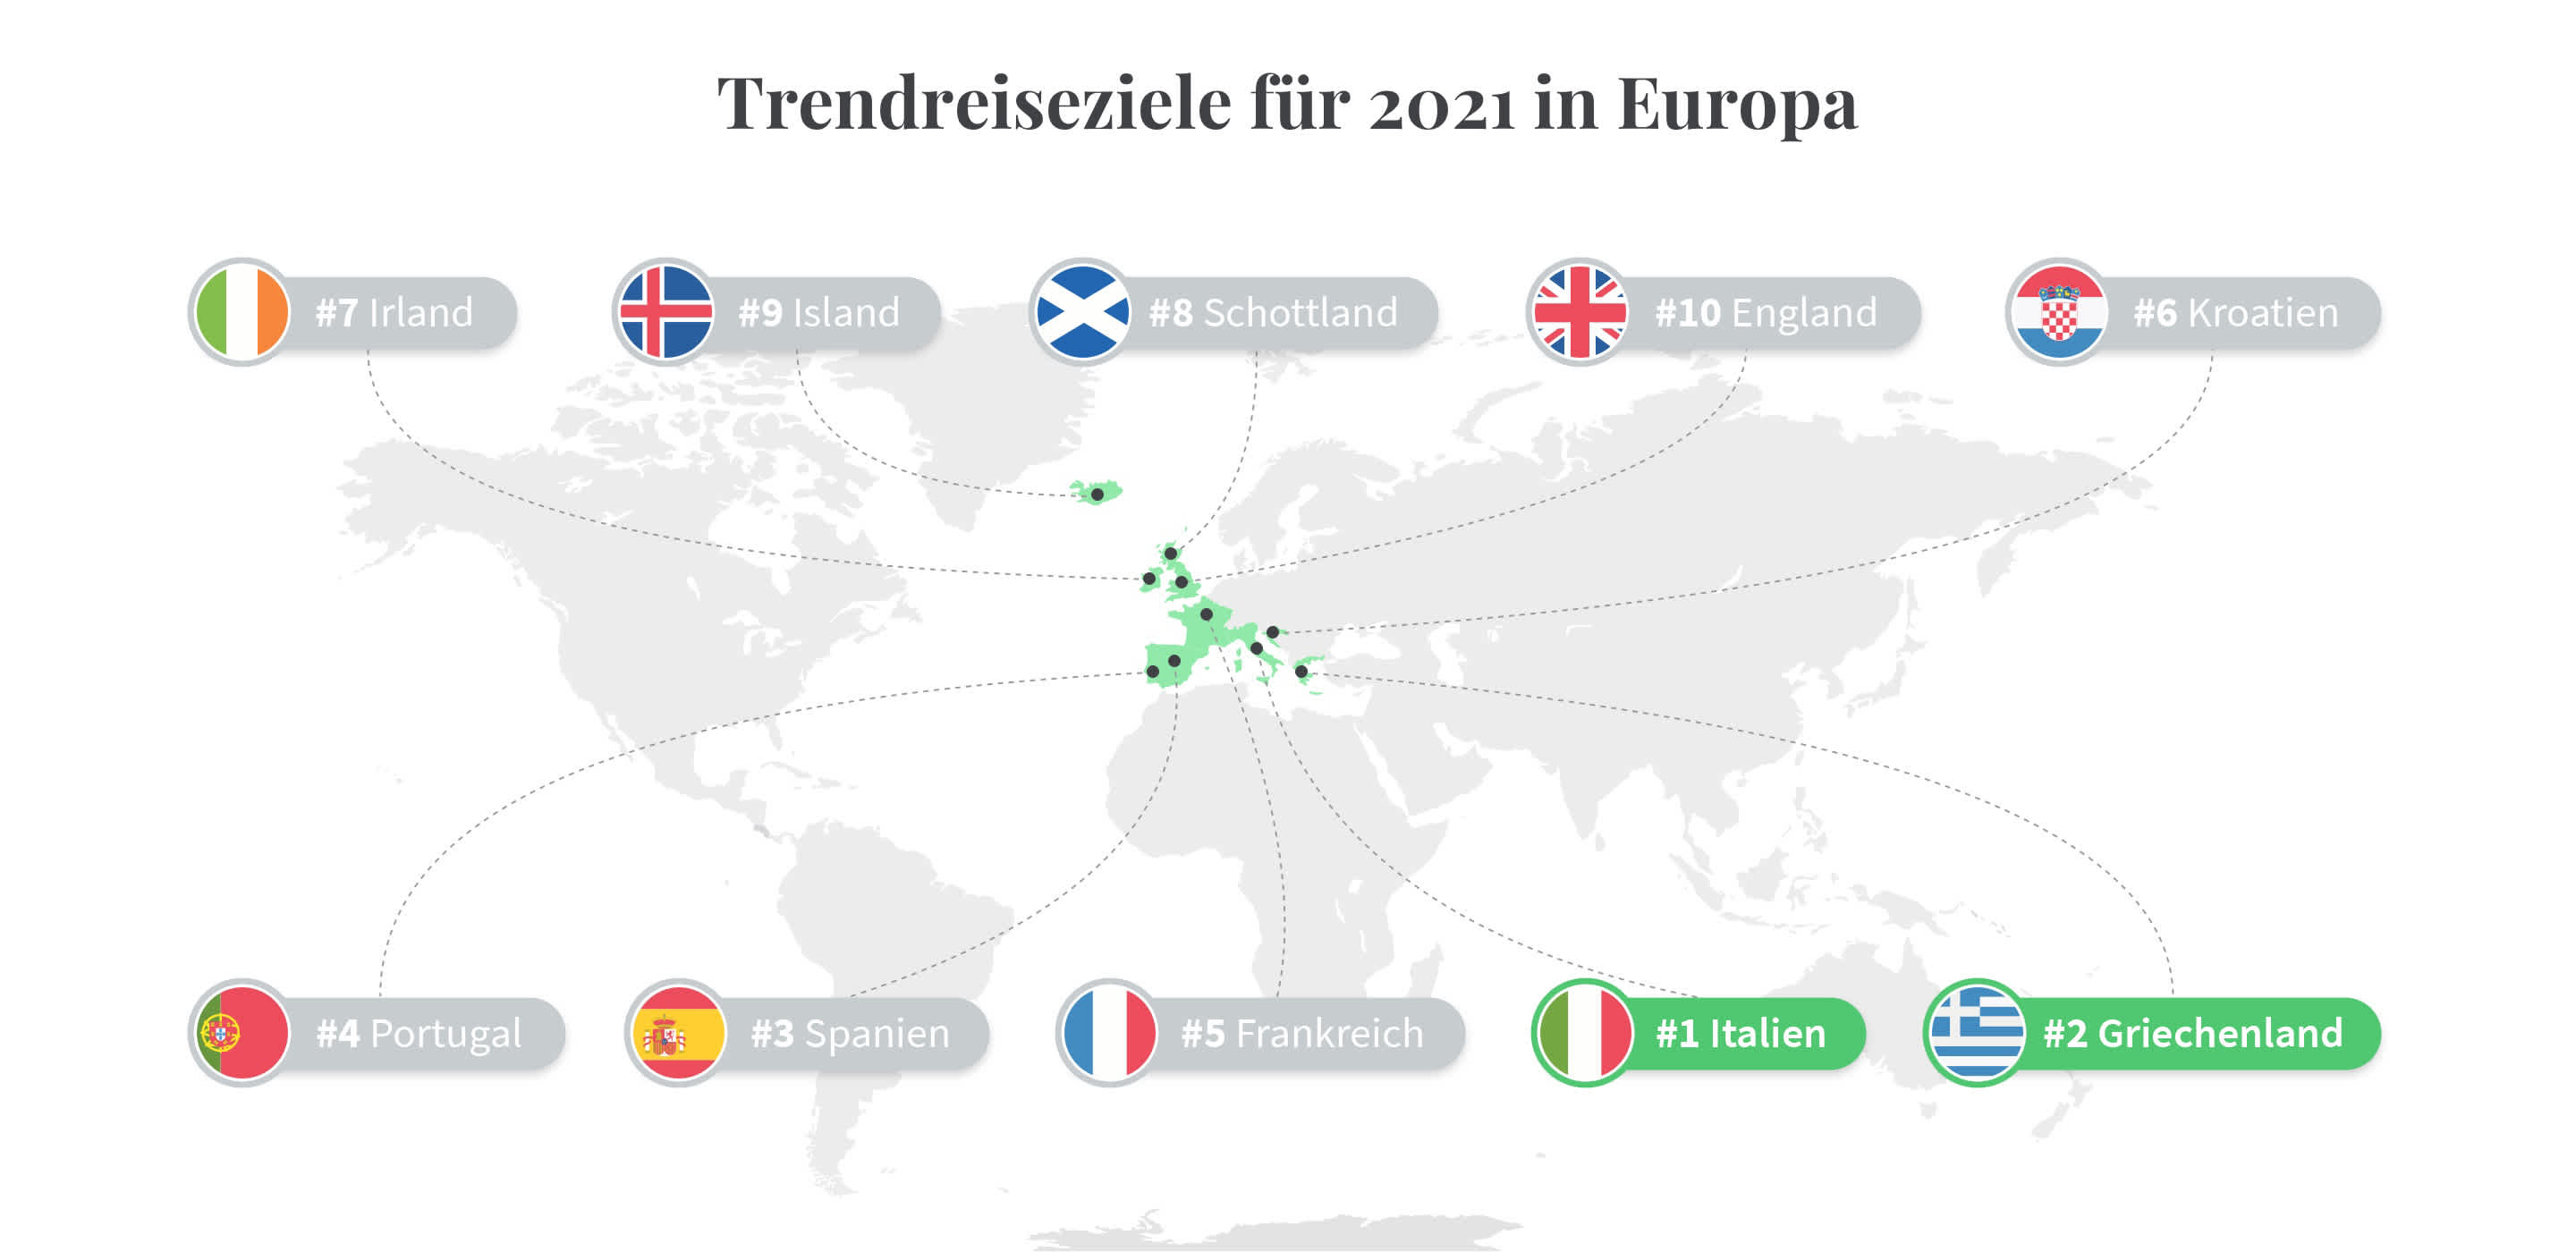 Trendreiseziele für den Sommer 2021: Italien und Griechenland führen die Liste an